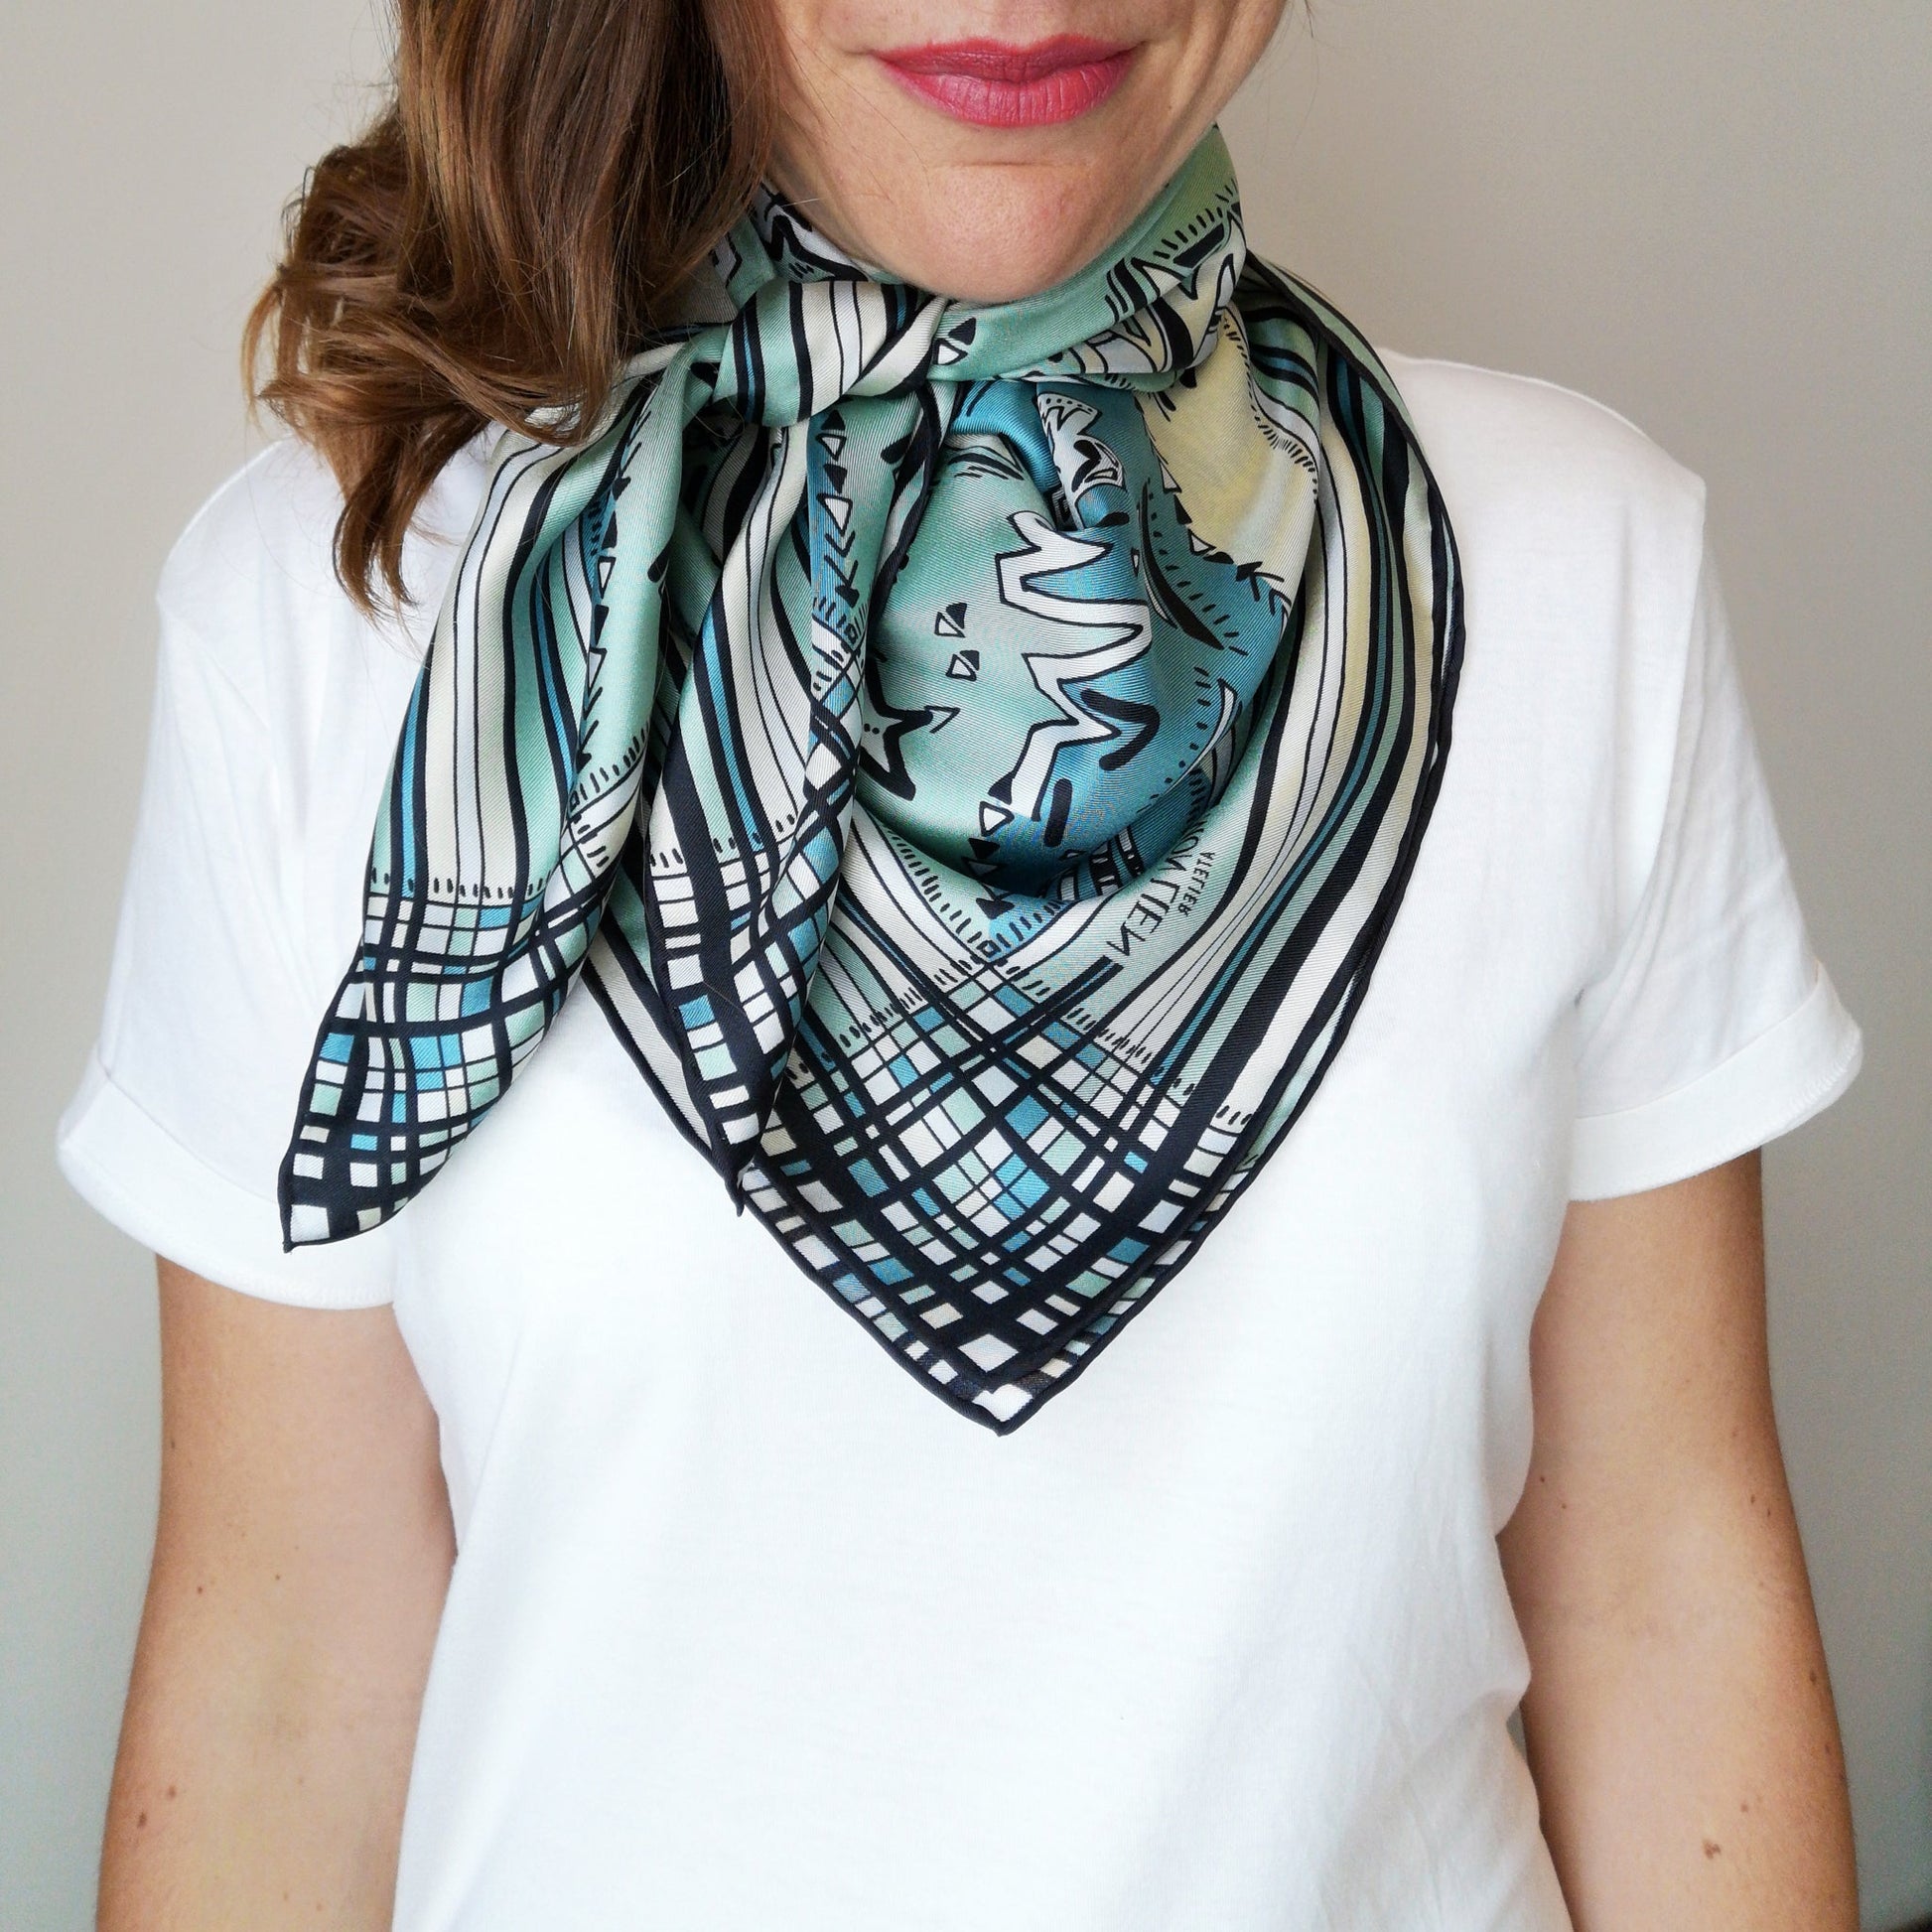 accessorio creativo in seta nelle nuance chiare indossato intorno al collo con maglietta bianca